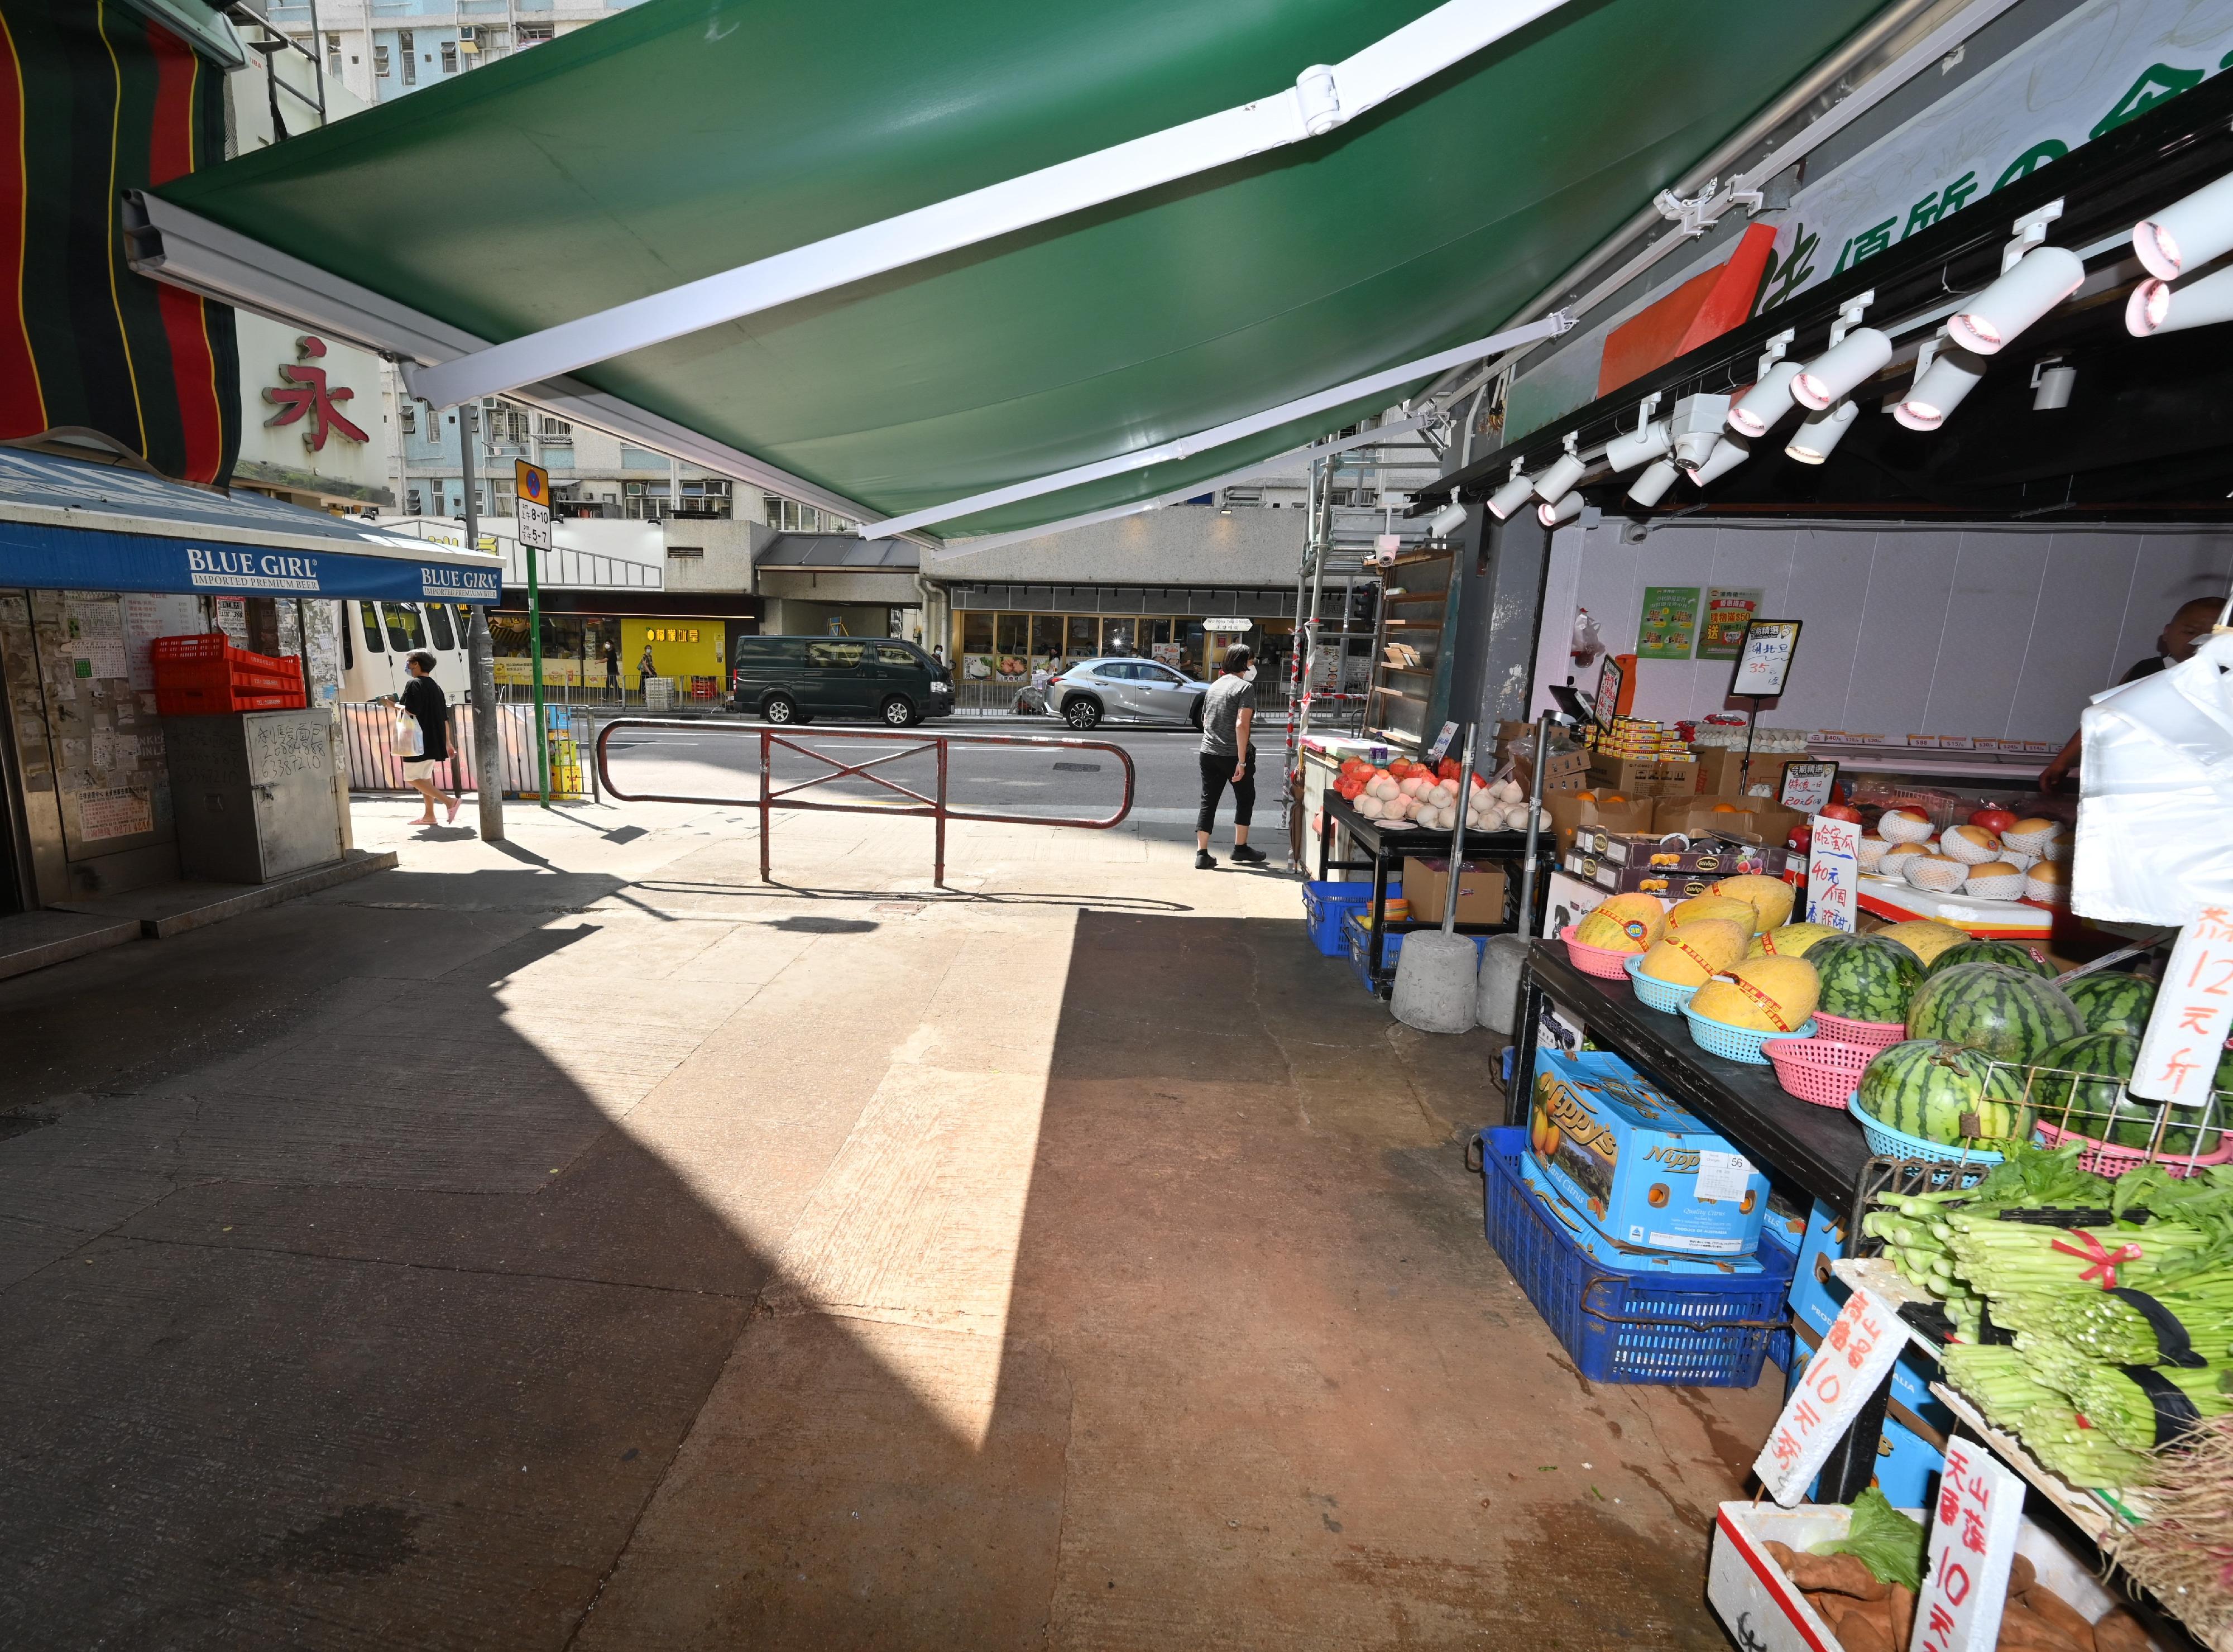 食物环境卫生署与香港警务处自十月三日起先后于各区展开连串严厉执法行动打击非法店铺阻街活动。图示葵青区一条街道于今日（十月九日）联合行动后的情况。 